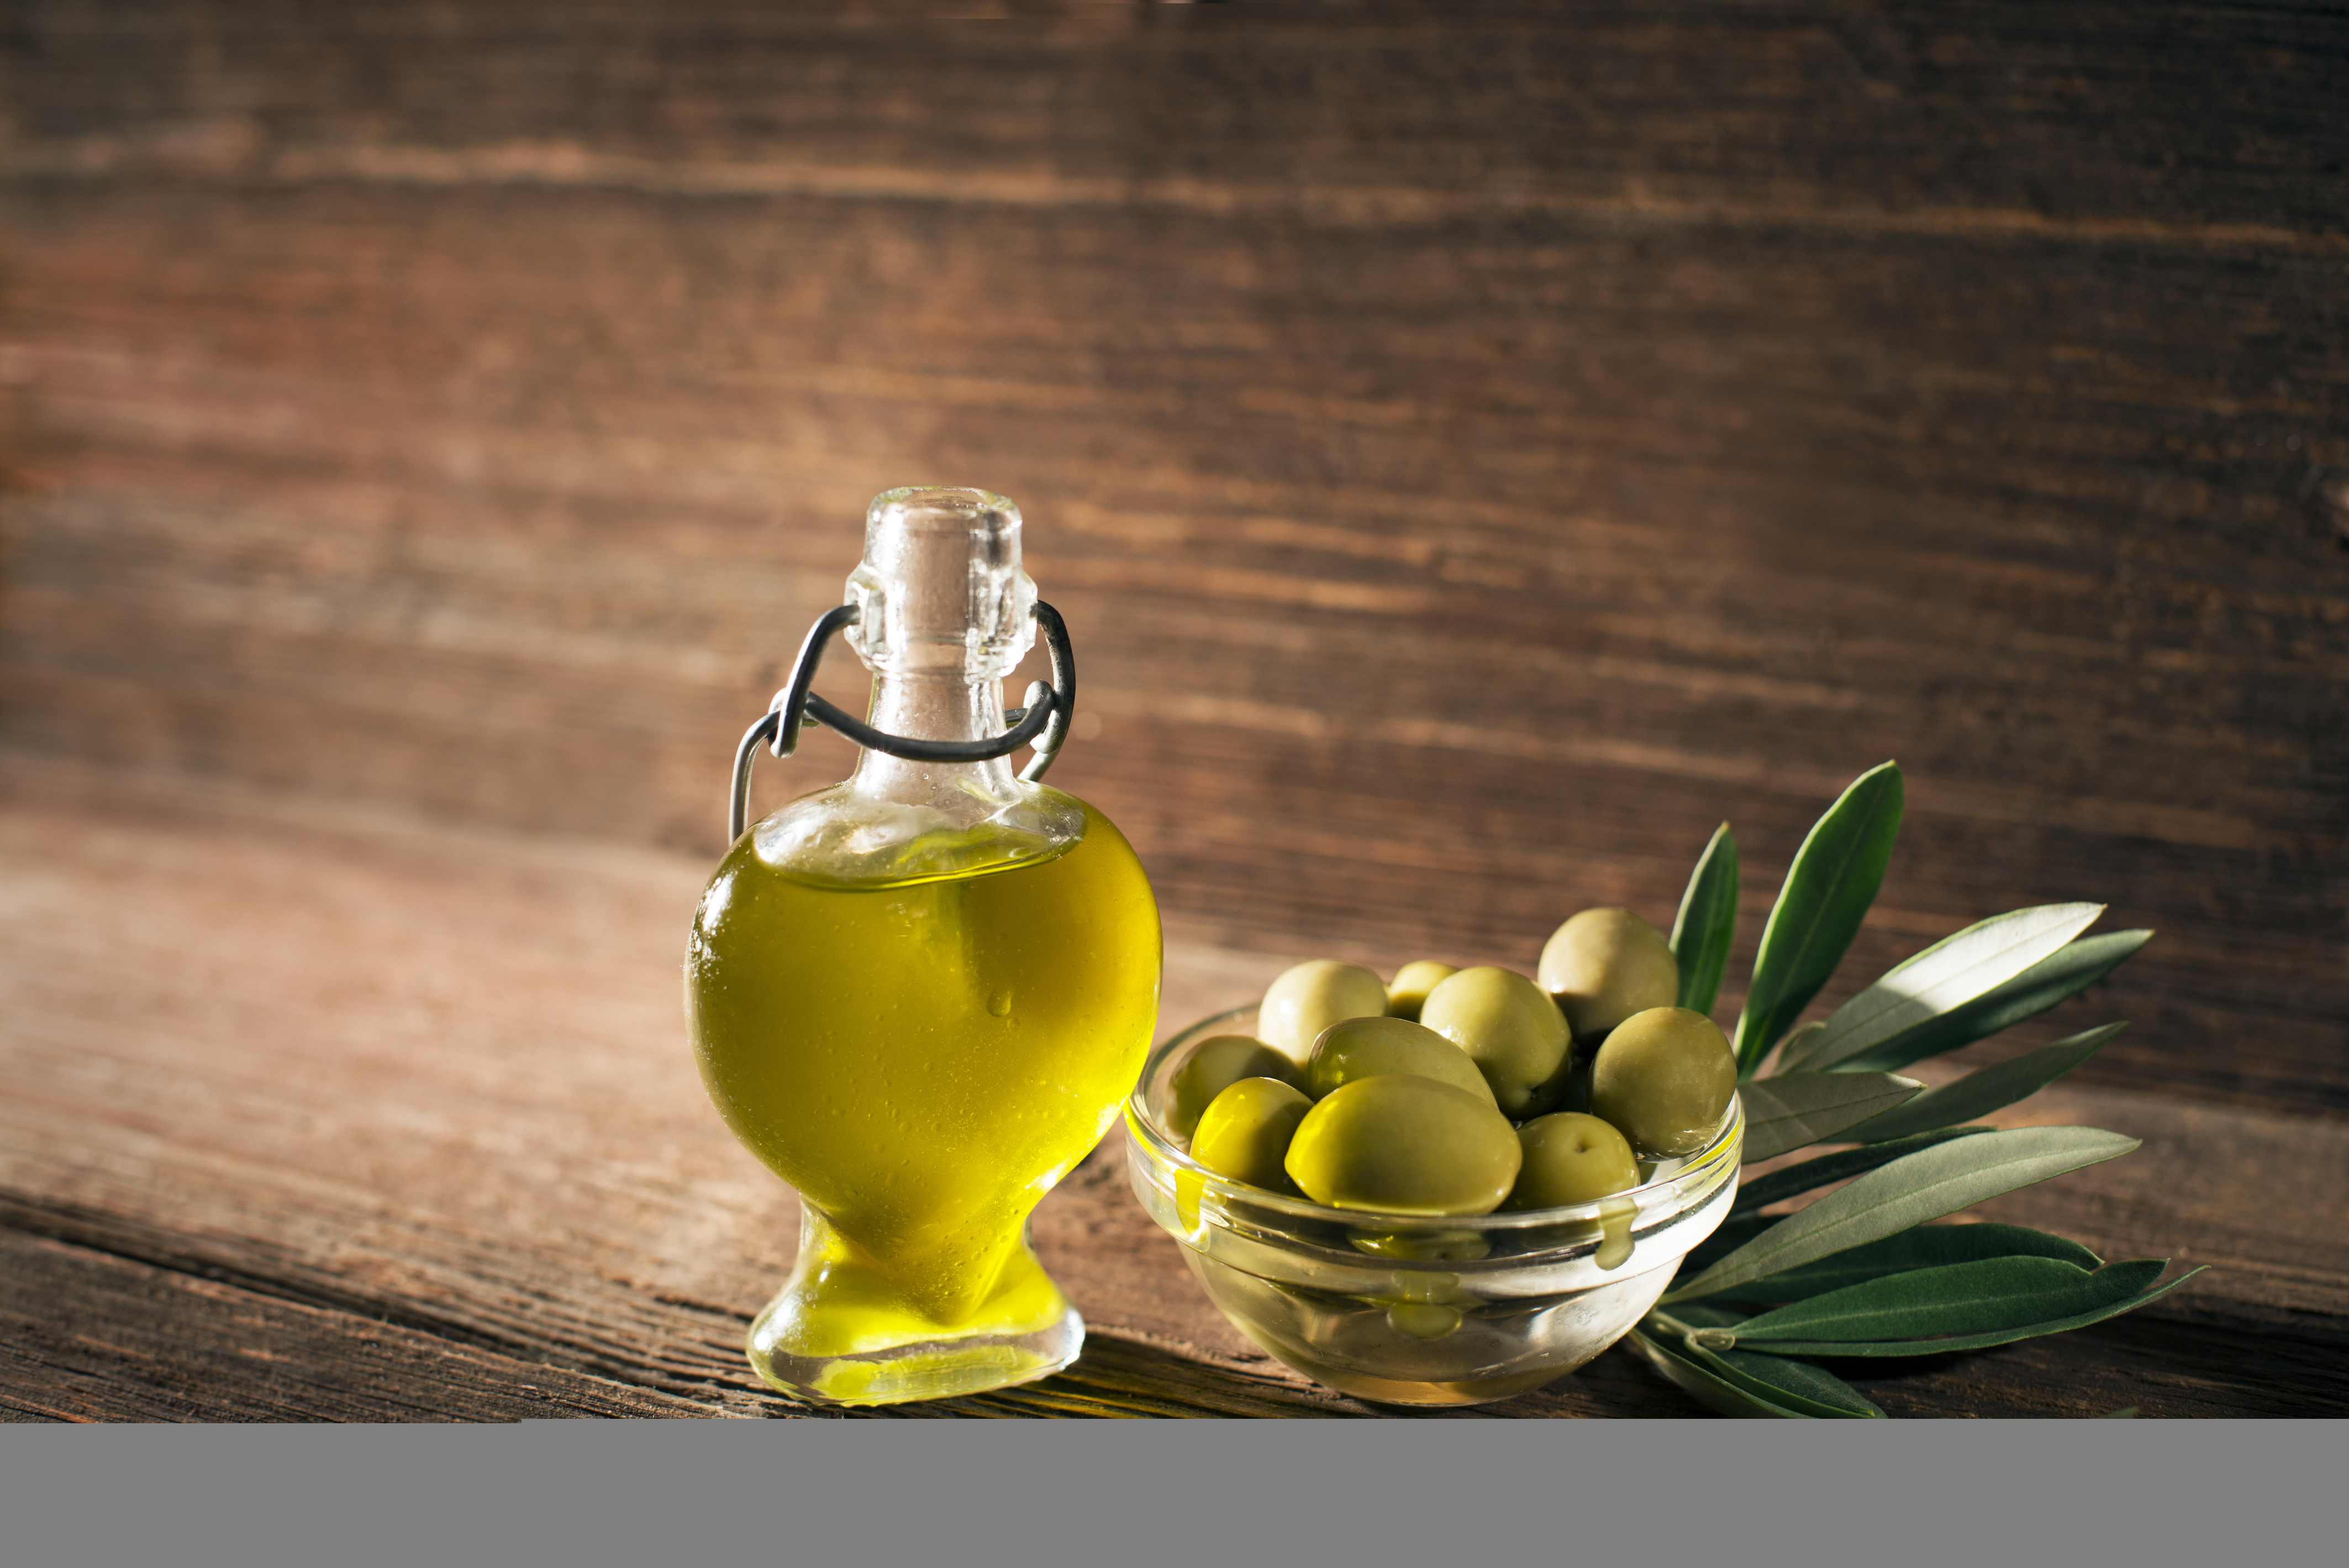 34+] Olive Oil Wallpaper - WallpaperSafari